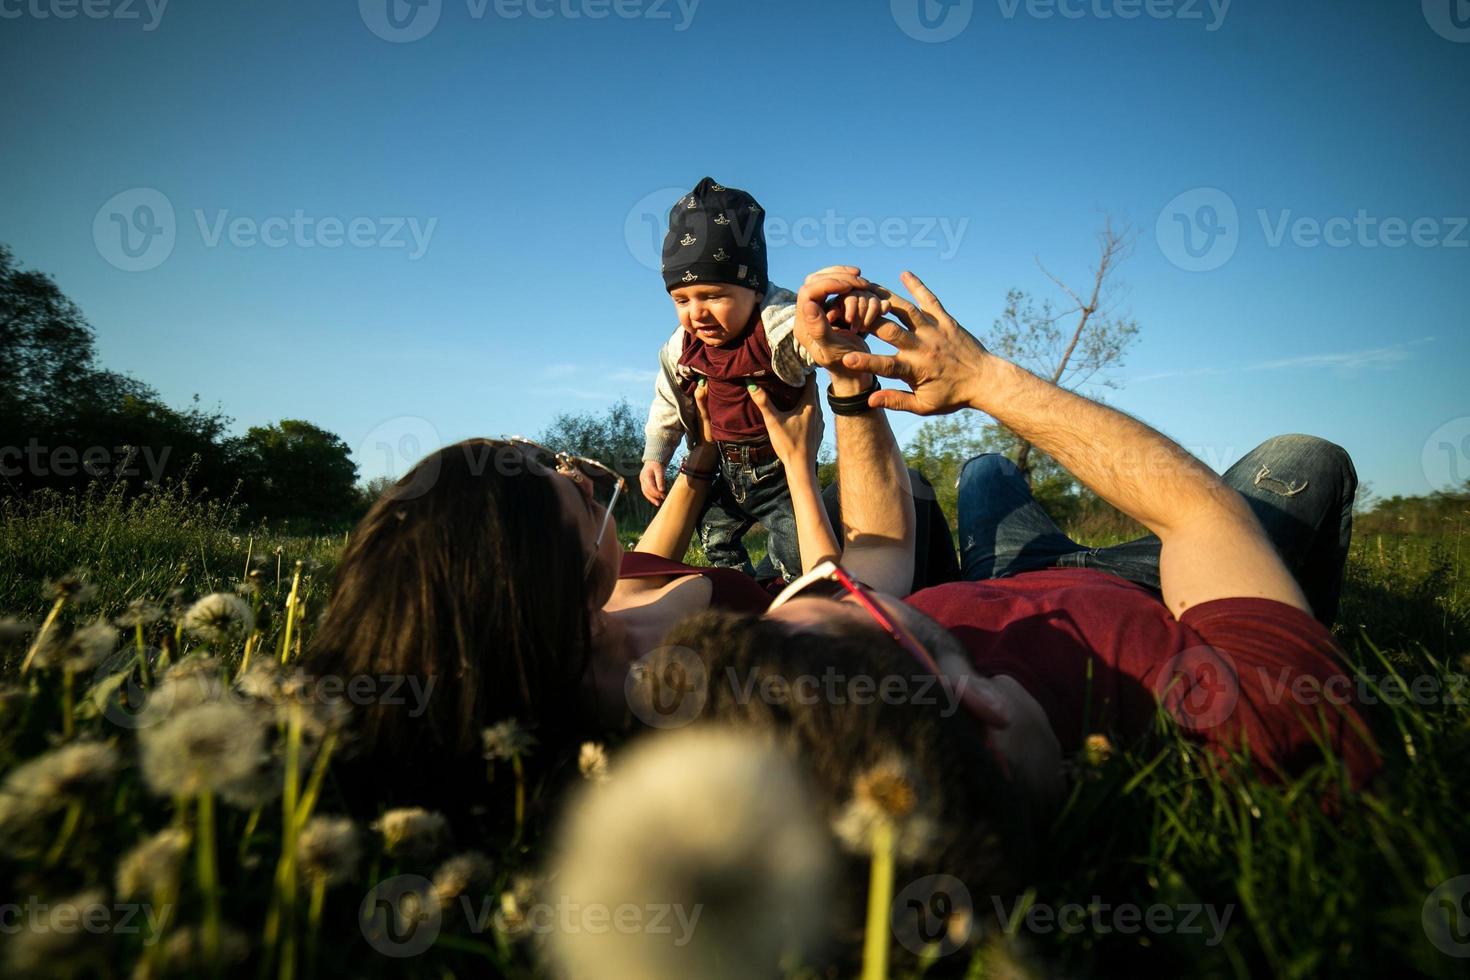 jeune famille avec un enfant sur la nature photo